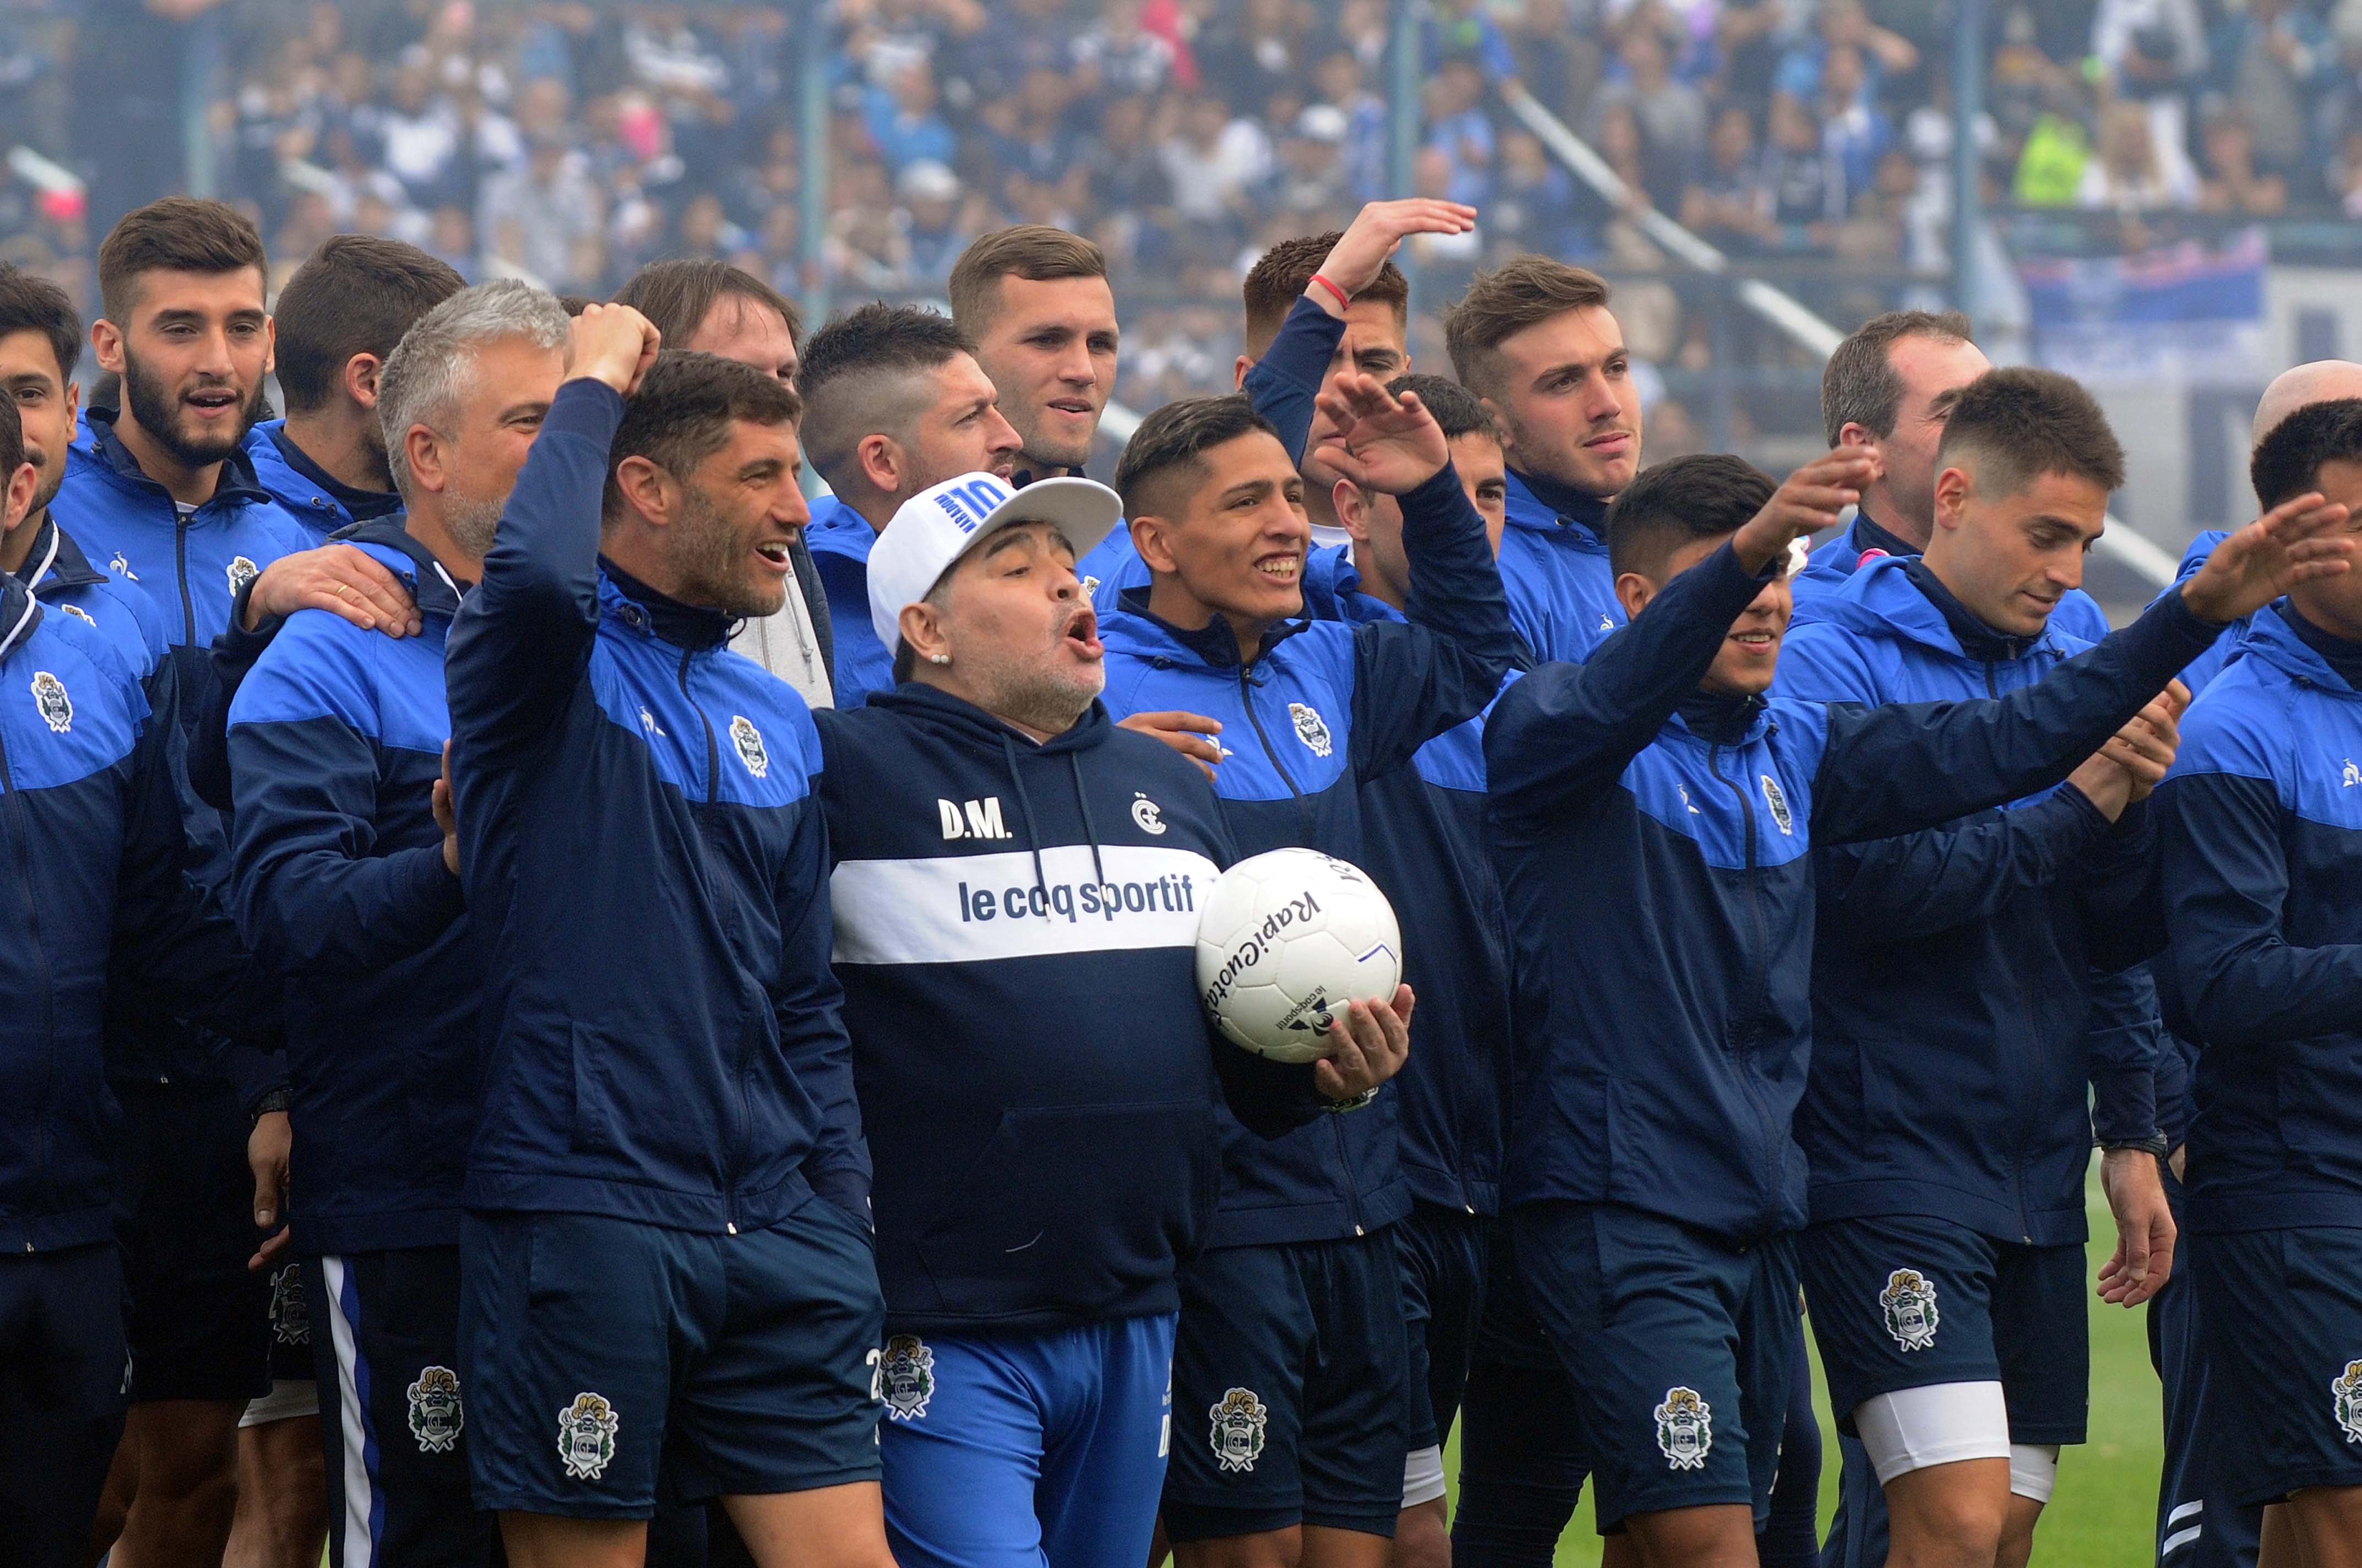 Maradona, acompañado por el capitán Licht y el resto de los jugadores, canta junto a los hinchas.